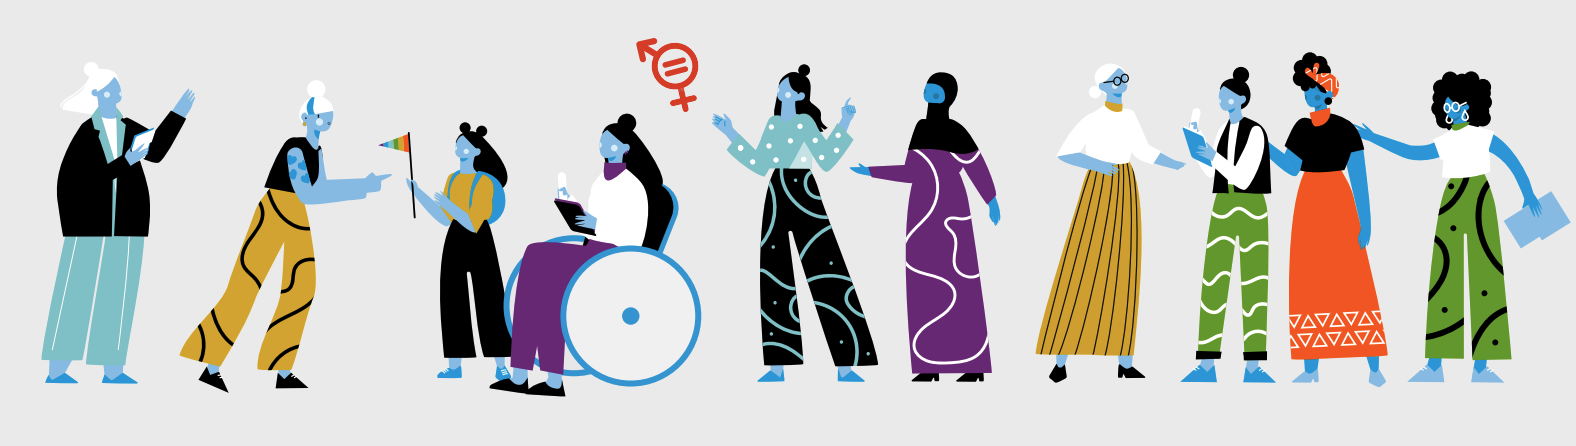 UN Women's Ten Gender Equality Accelerators